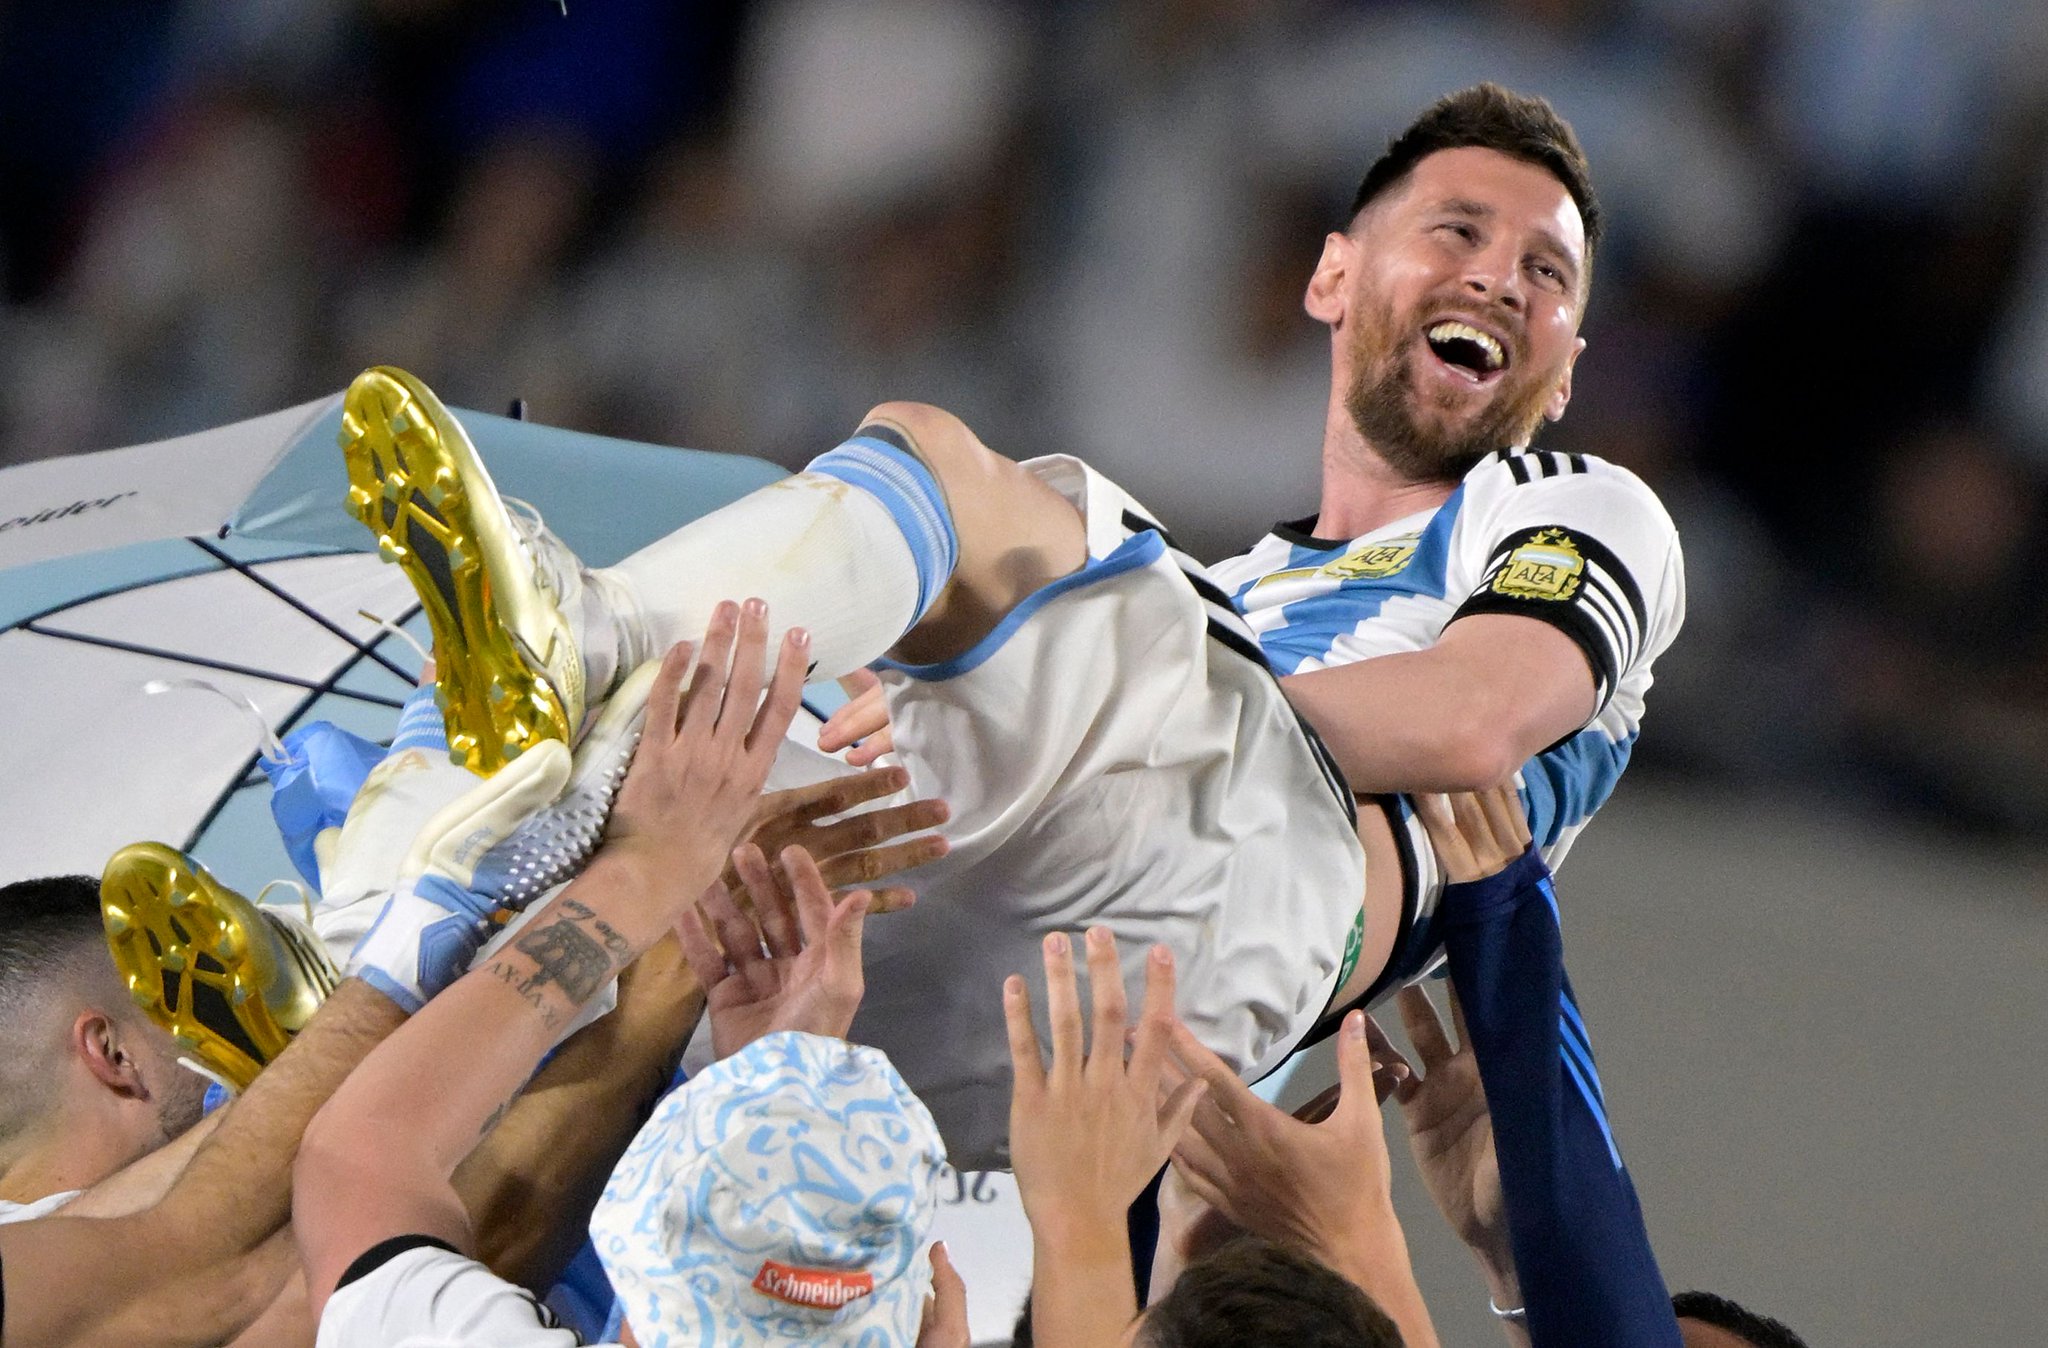 Gol 800, lágrimas e discurso: a consagração de Messi na Argentina